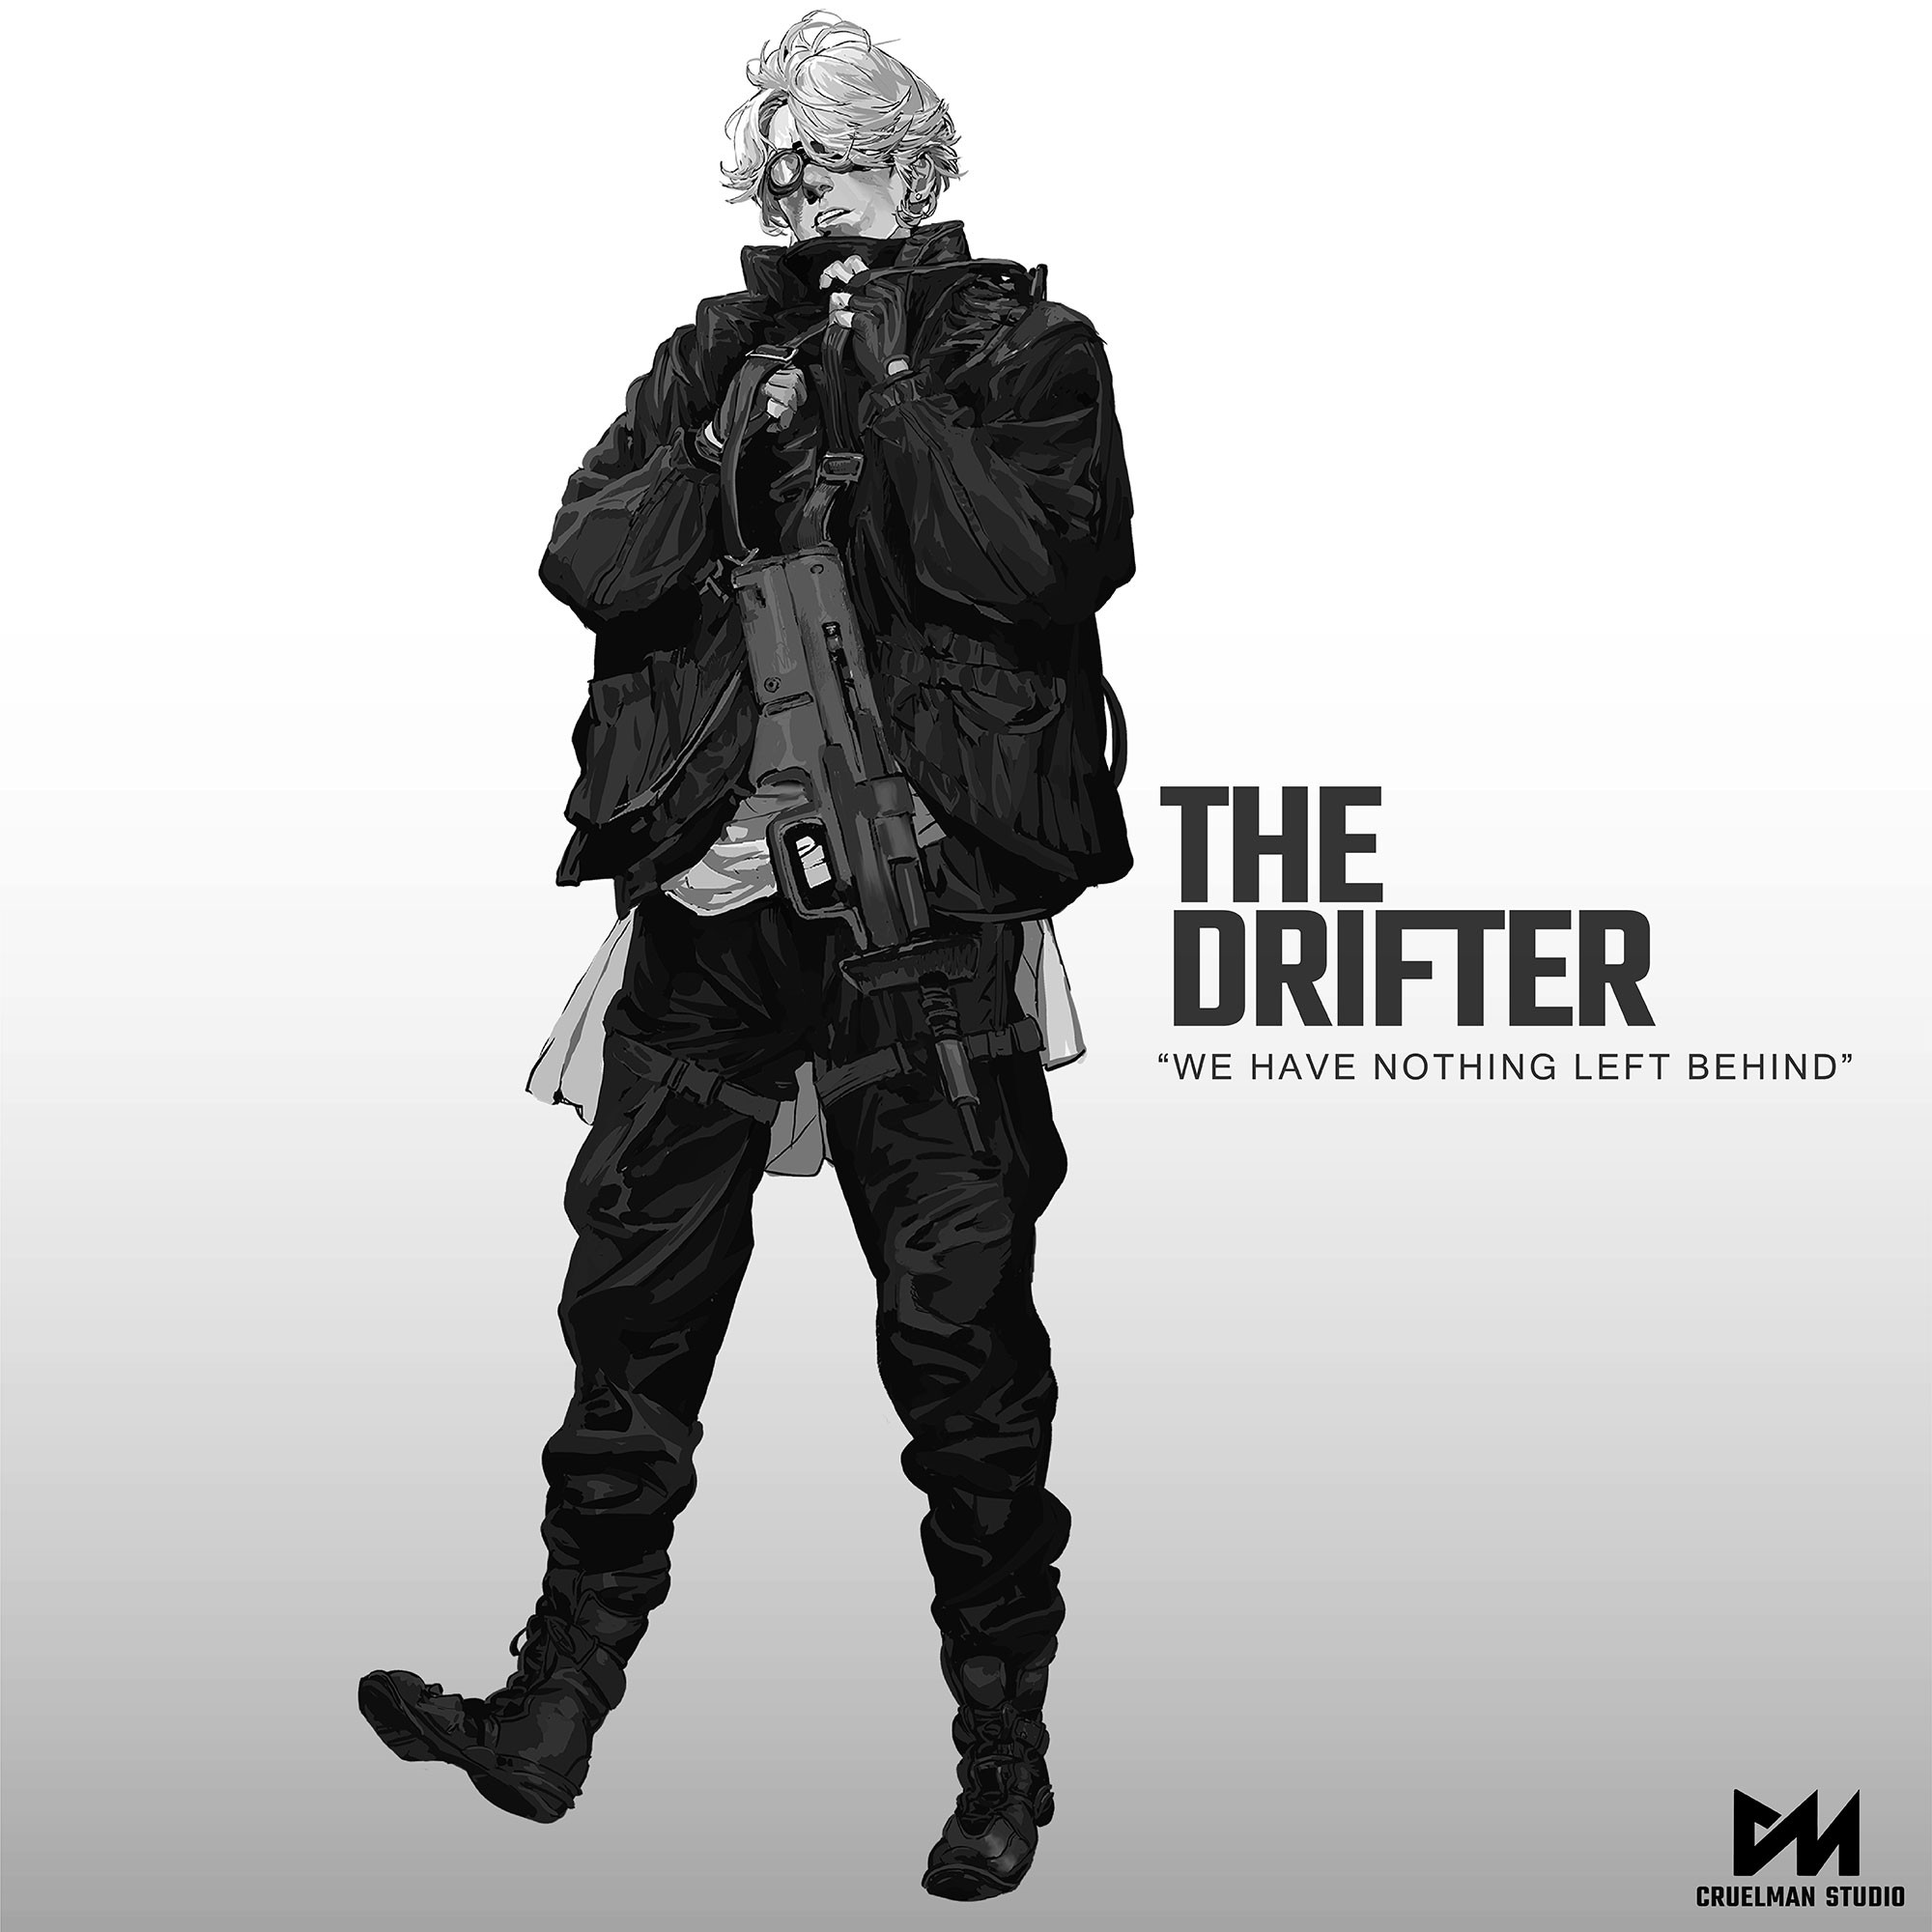 The Drifter
Shawn